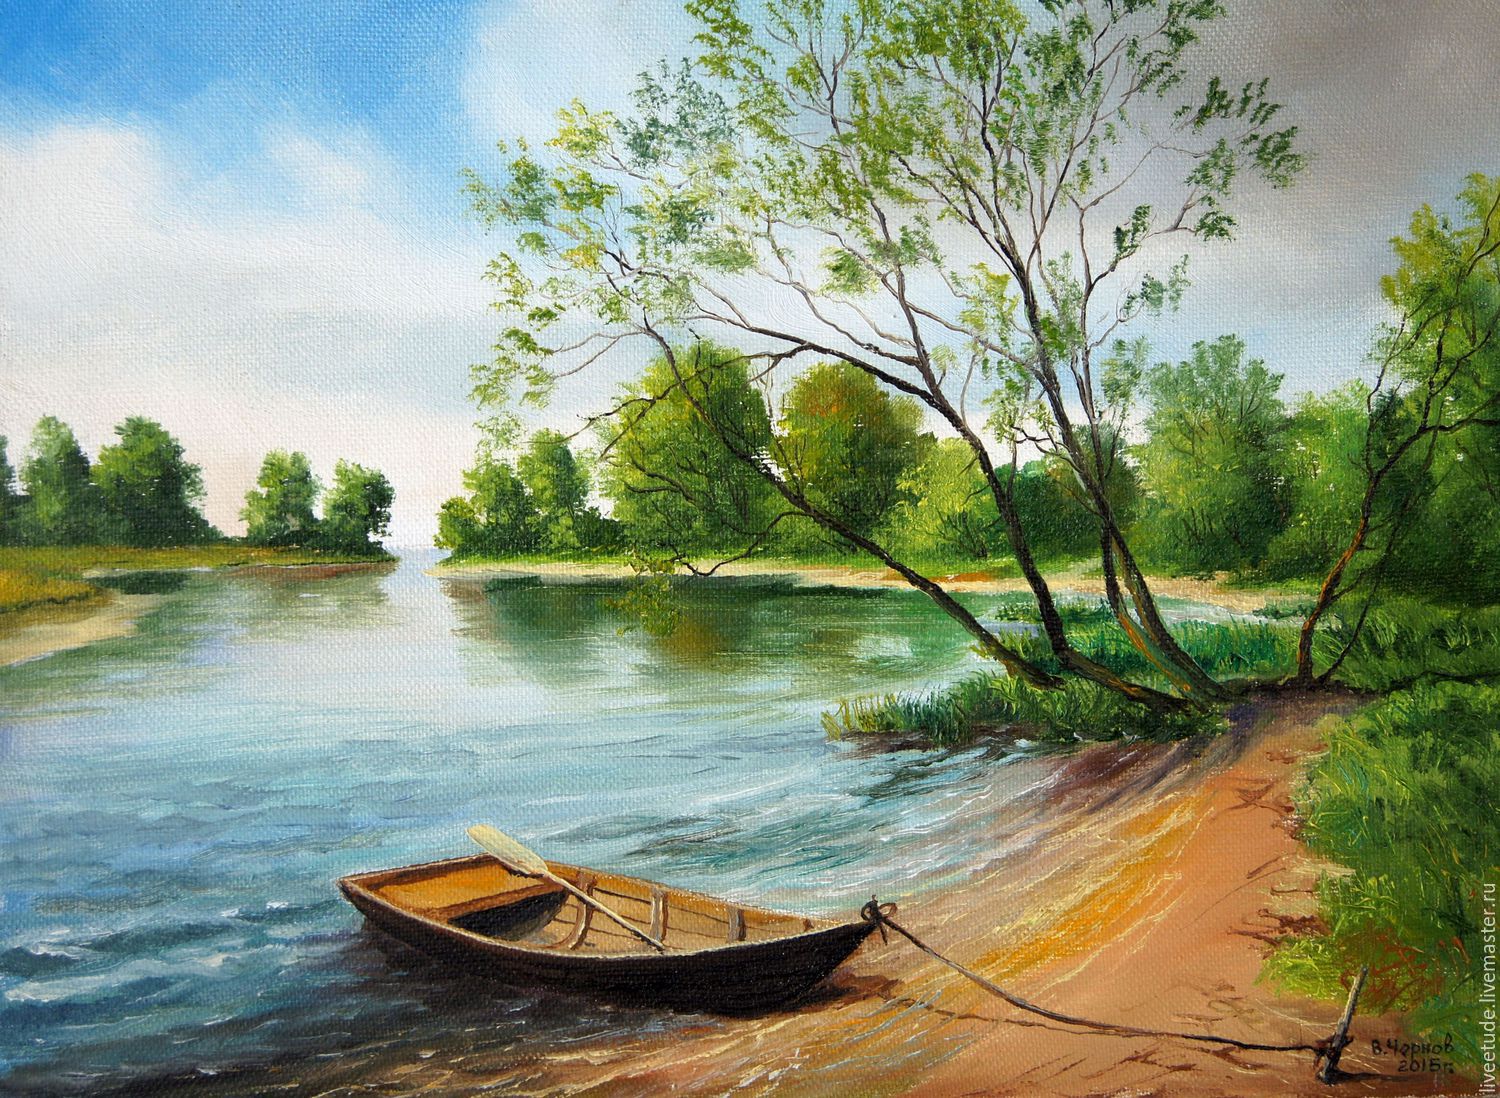 Рисунок реки озера или моря. Картина "Речной пейзаж", 1900г. Пейзаж с речкой. Пейзаж рисунок.